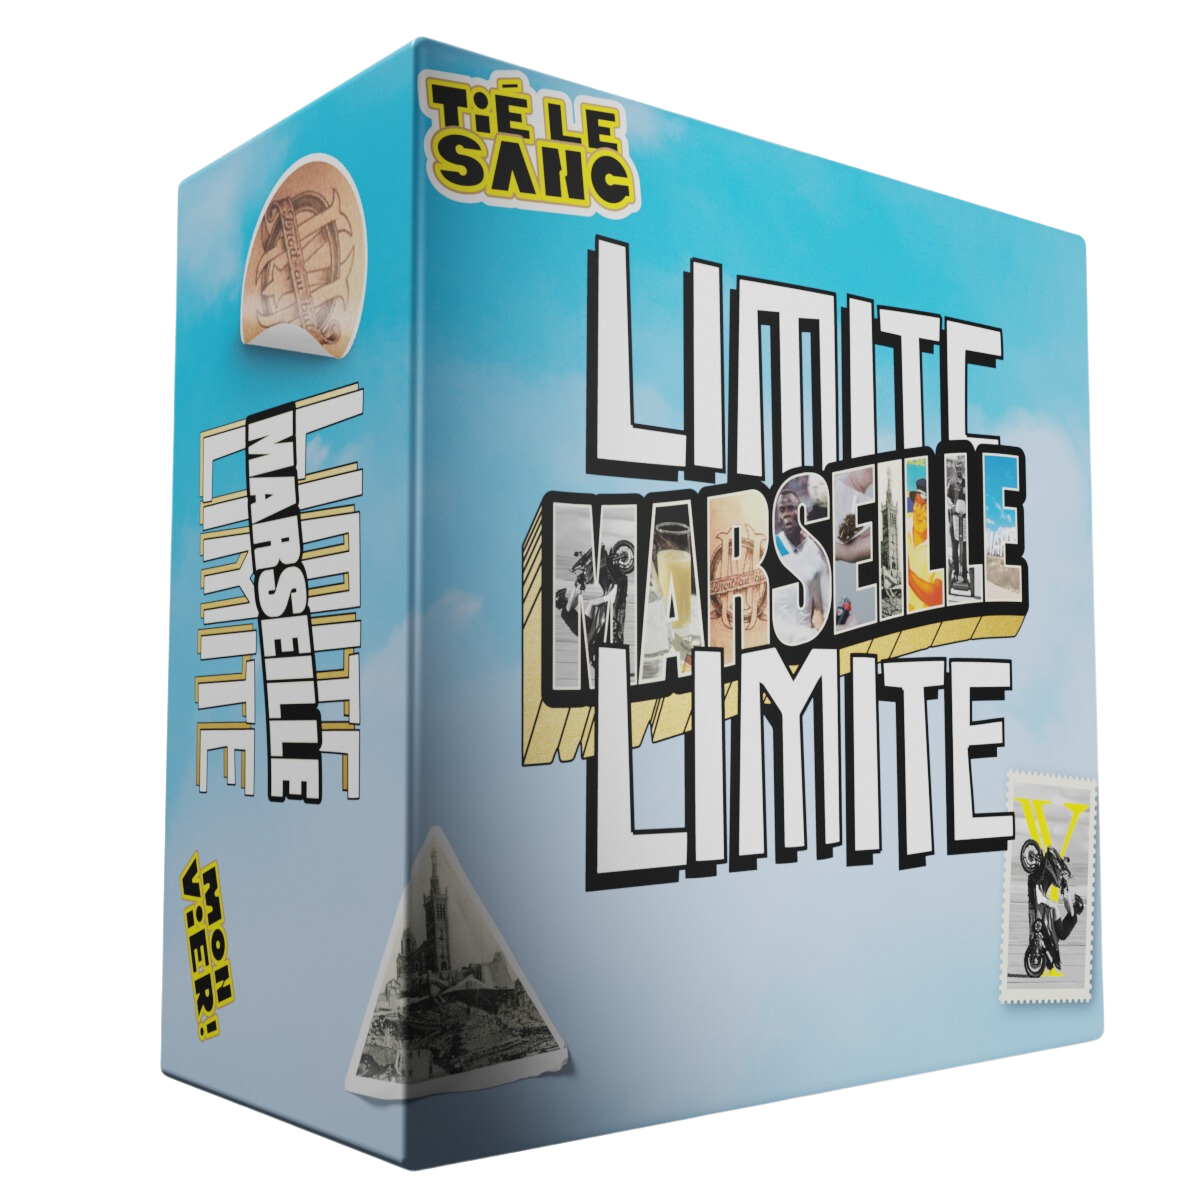 LIMITE LIMITE LIMITE - Nouvelle Edition - L'Extension Trash du Jeu